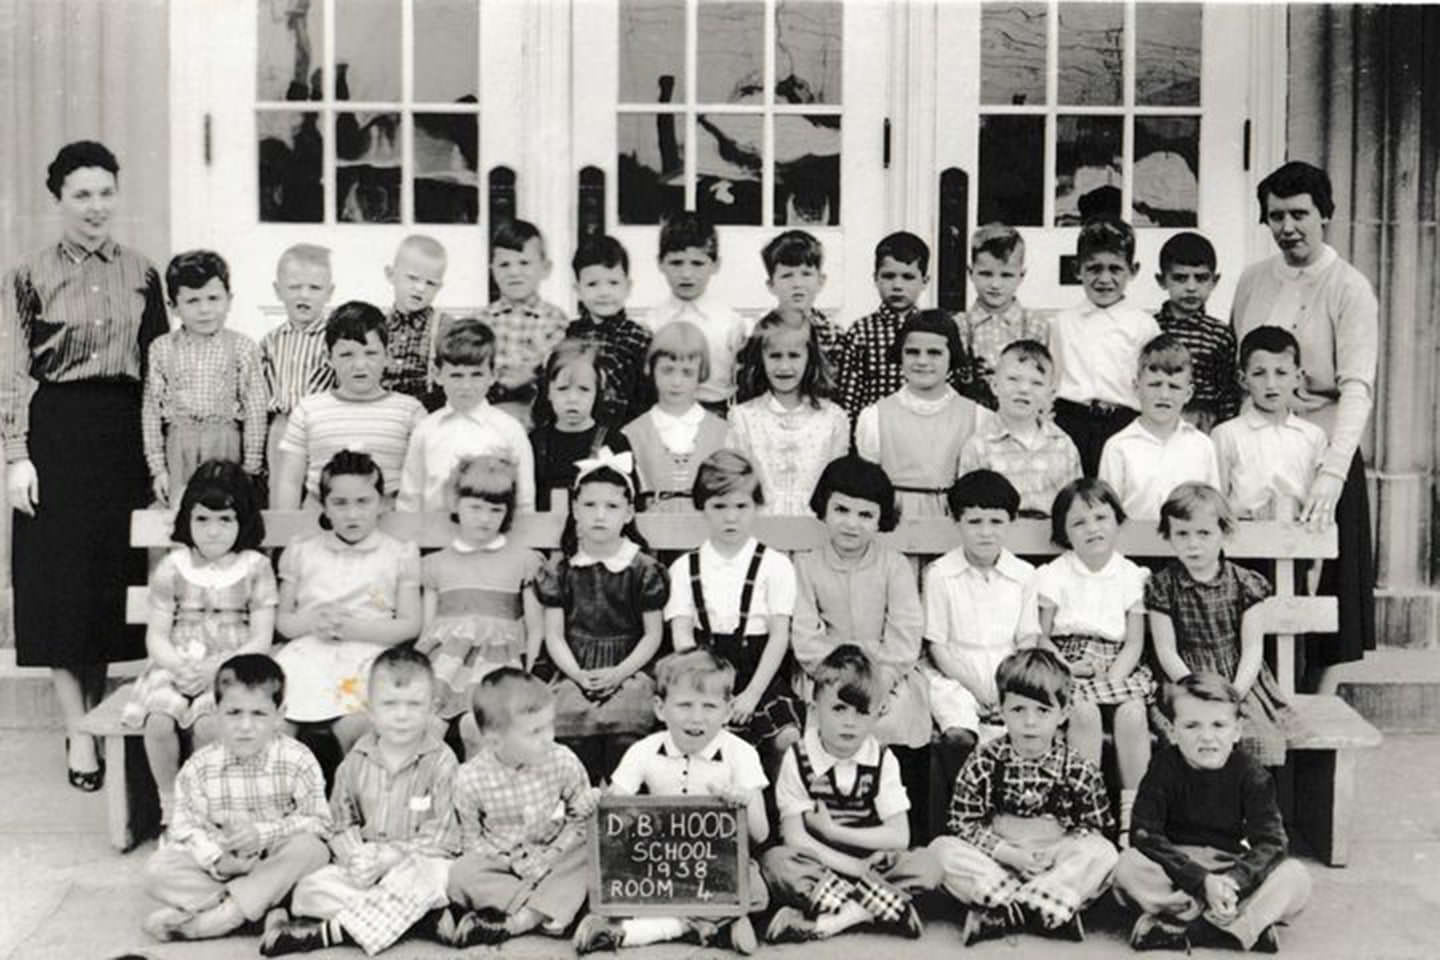 D.B. Hood Public School on Dufferin Street, 1958.